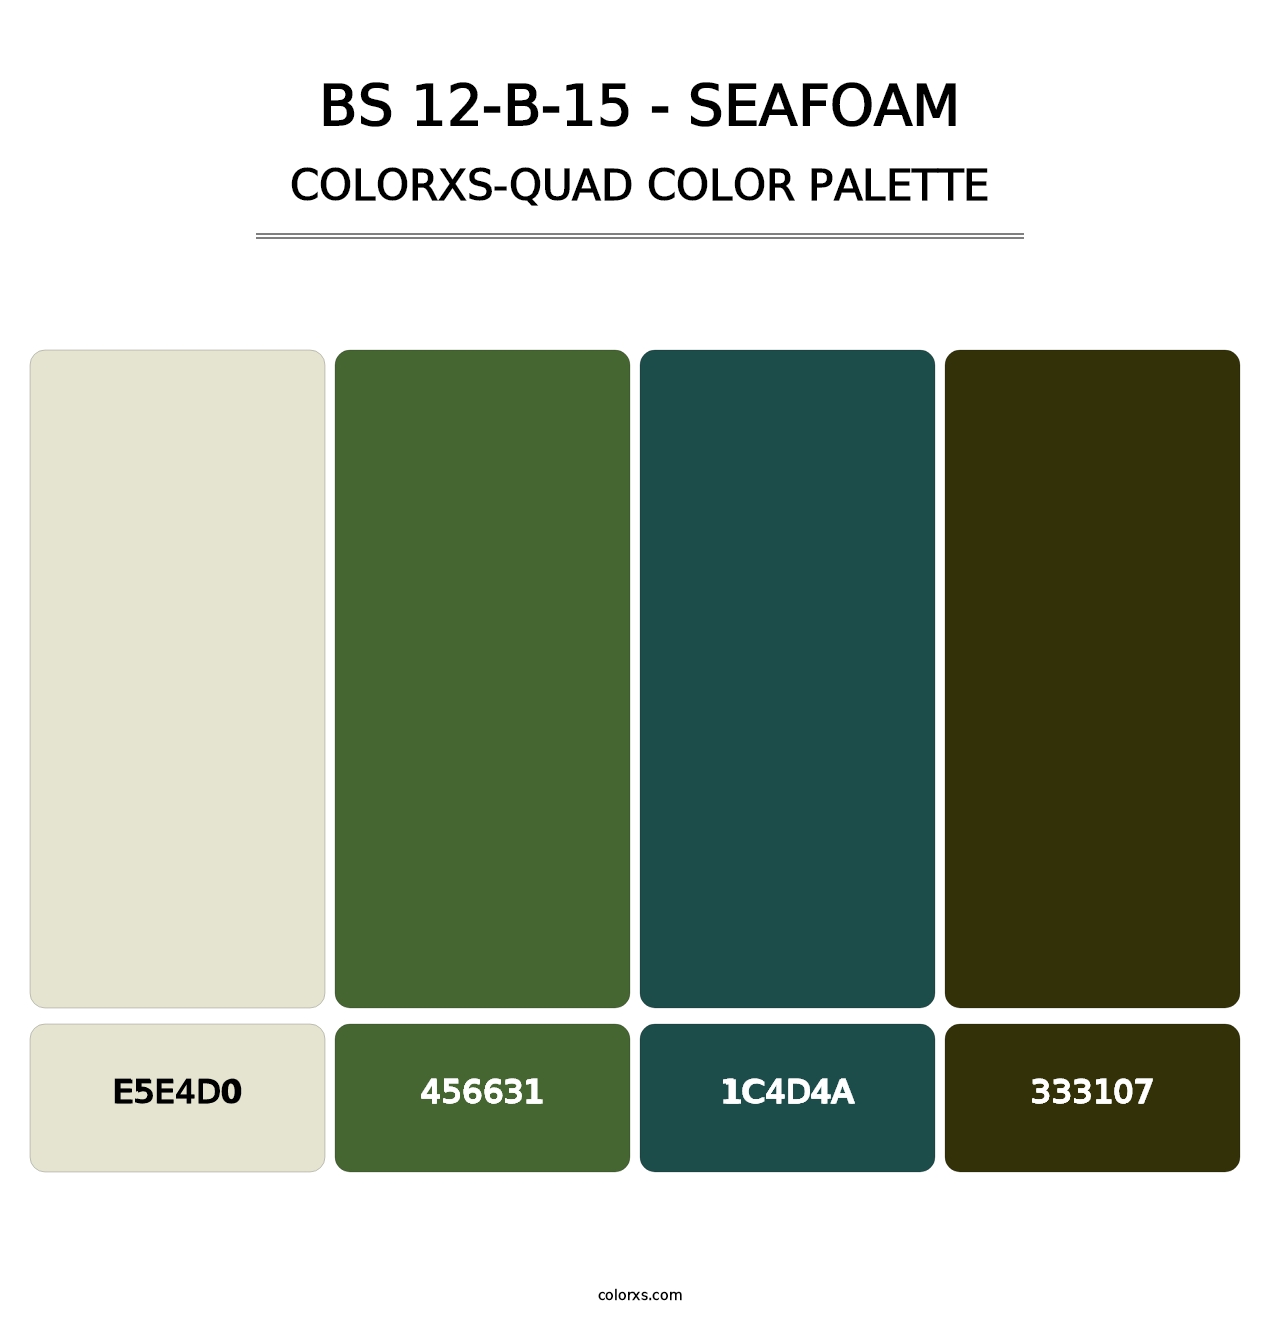 BS 12-B-15 - Seafoam - Colorxs Quad Palette